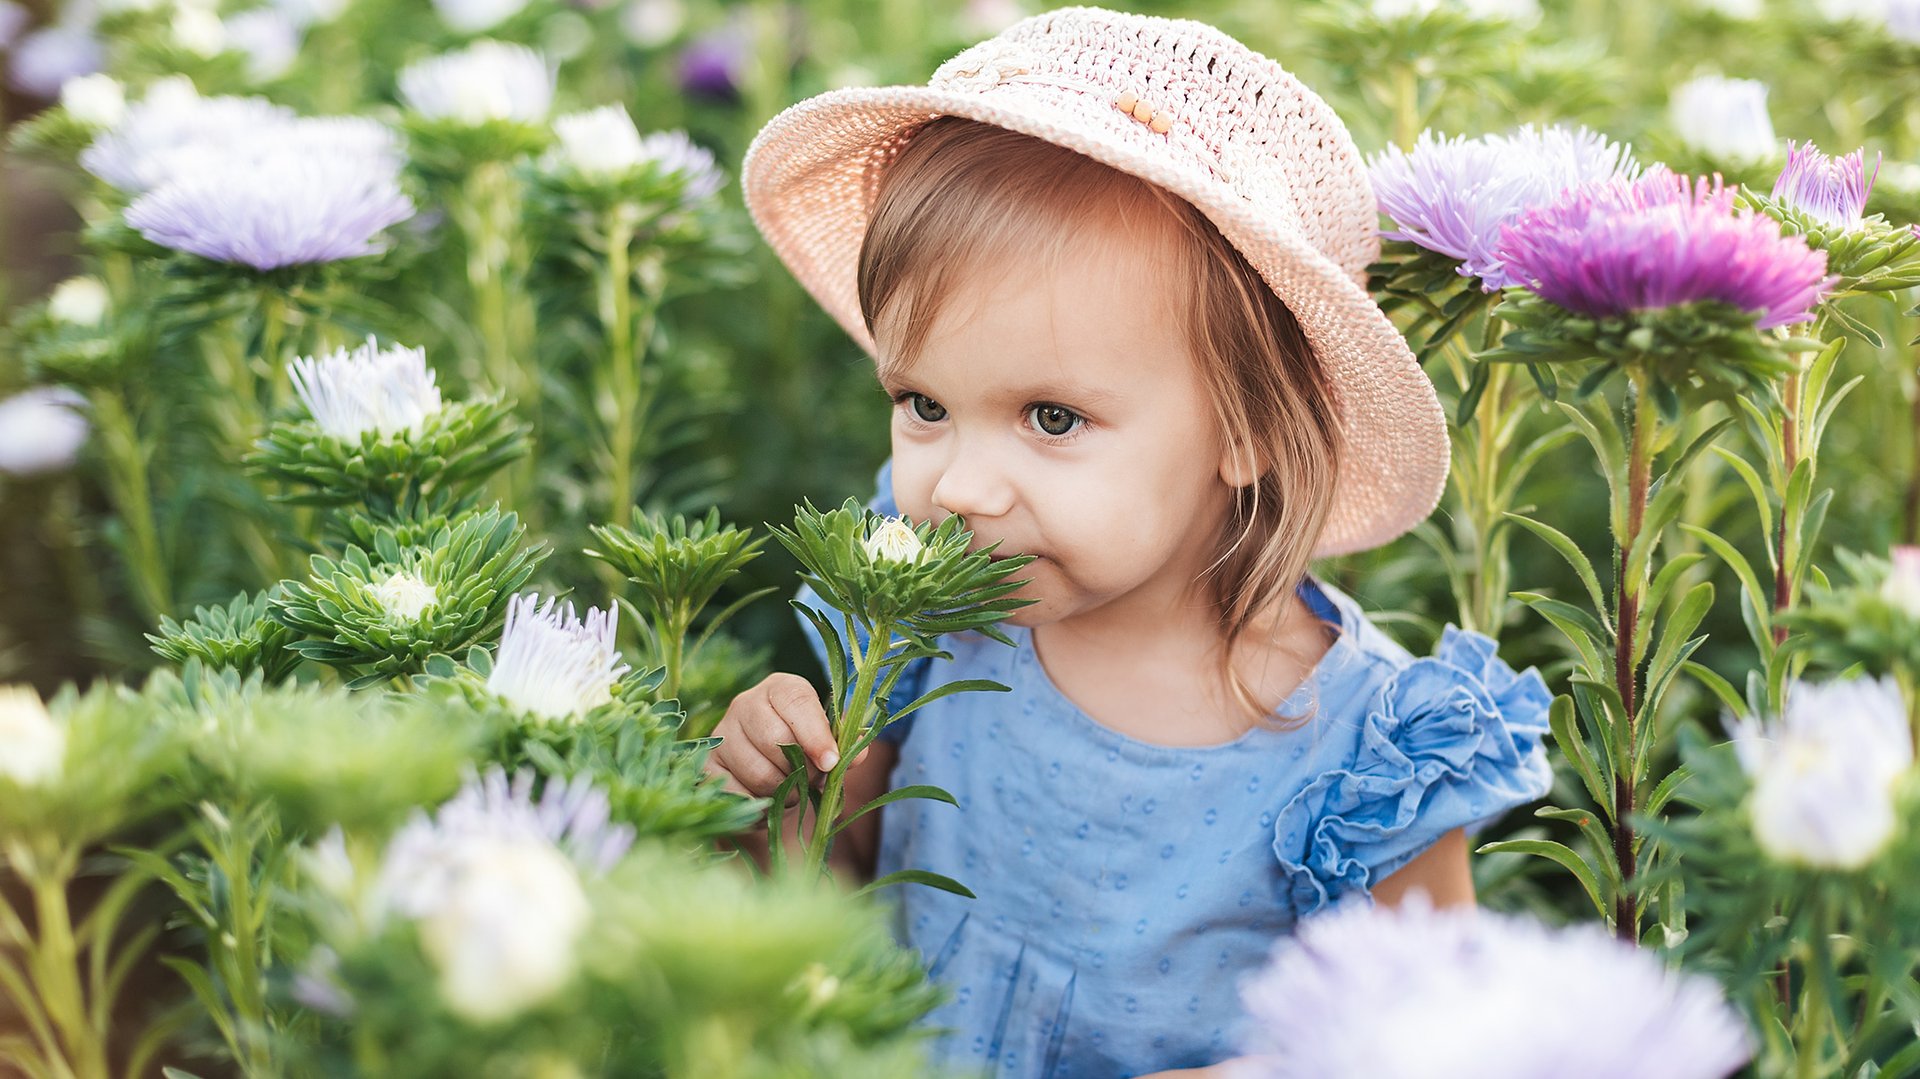 Dziecko wacha kwiatki w ogrodzie pelnym roslin